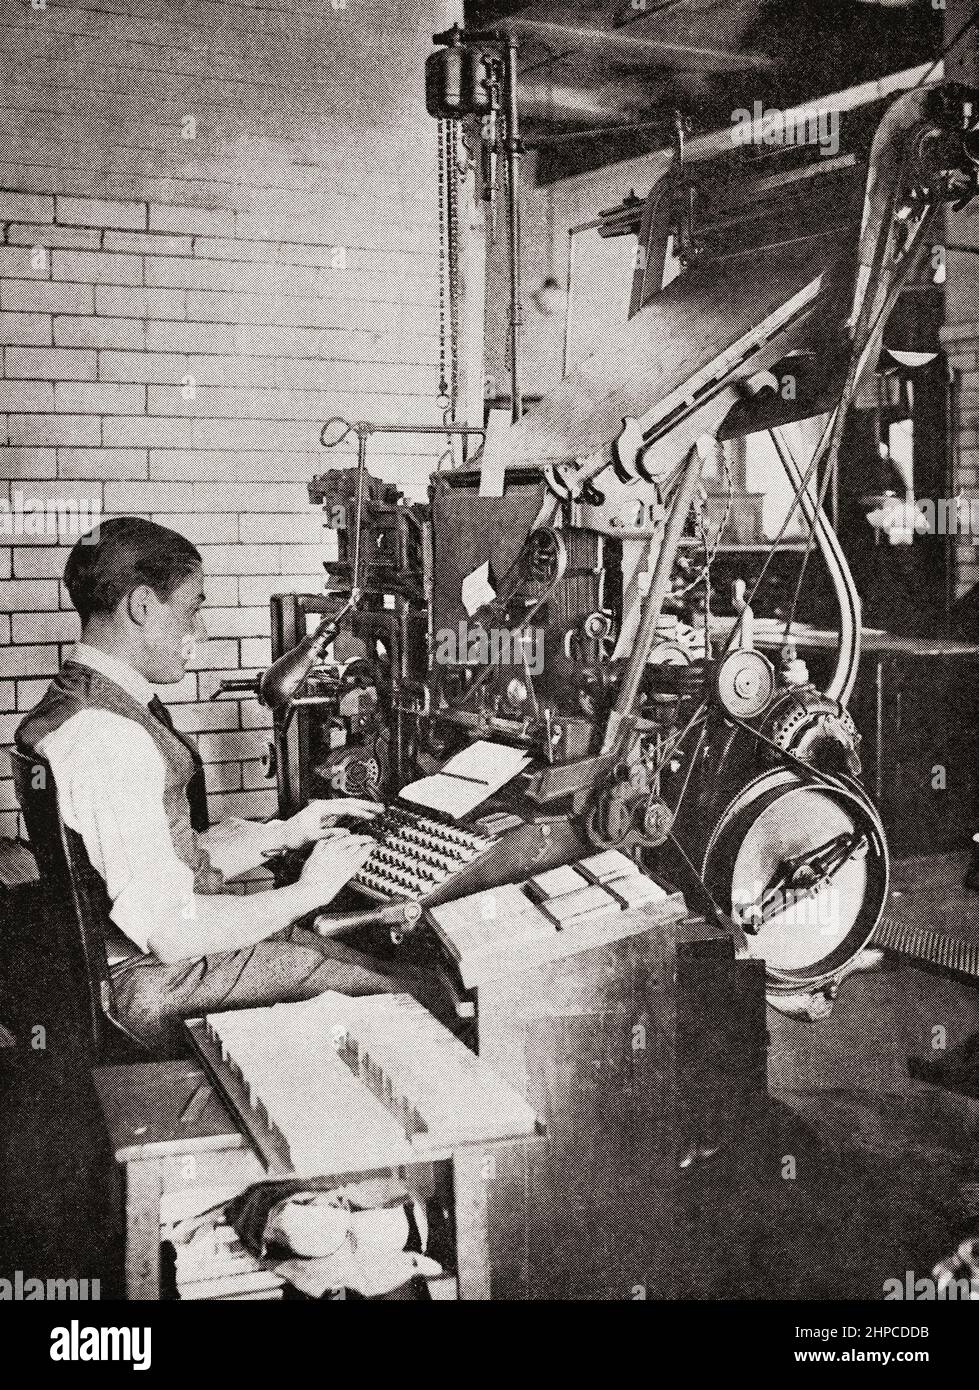 Eine linotype-Maschine, eine Liniengießmaschine, die zum Drucken von Zeitungen, Zeitschriften und Plakaten verwendet wird. Aus dem Wonder Book of Science, erschienen in den 30er Jahren. Stockfoto